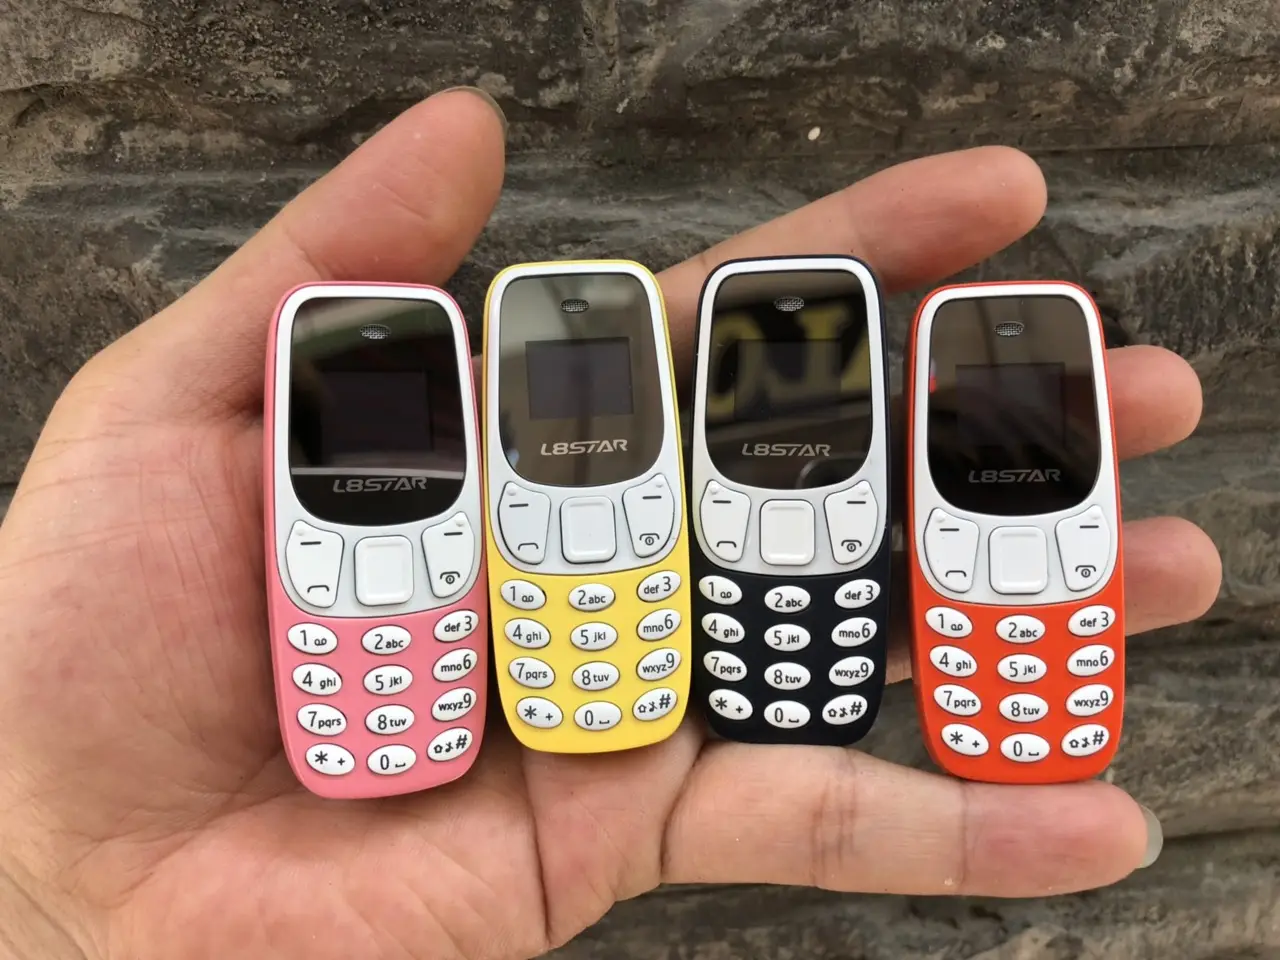 Điện thoại mini điện thoại siêu nhỏ Mini L8star BM10 có giả giọng nói